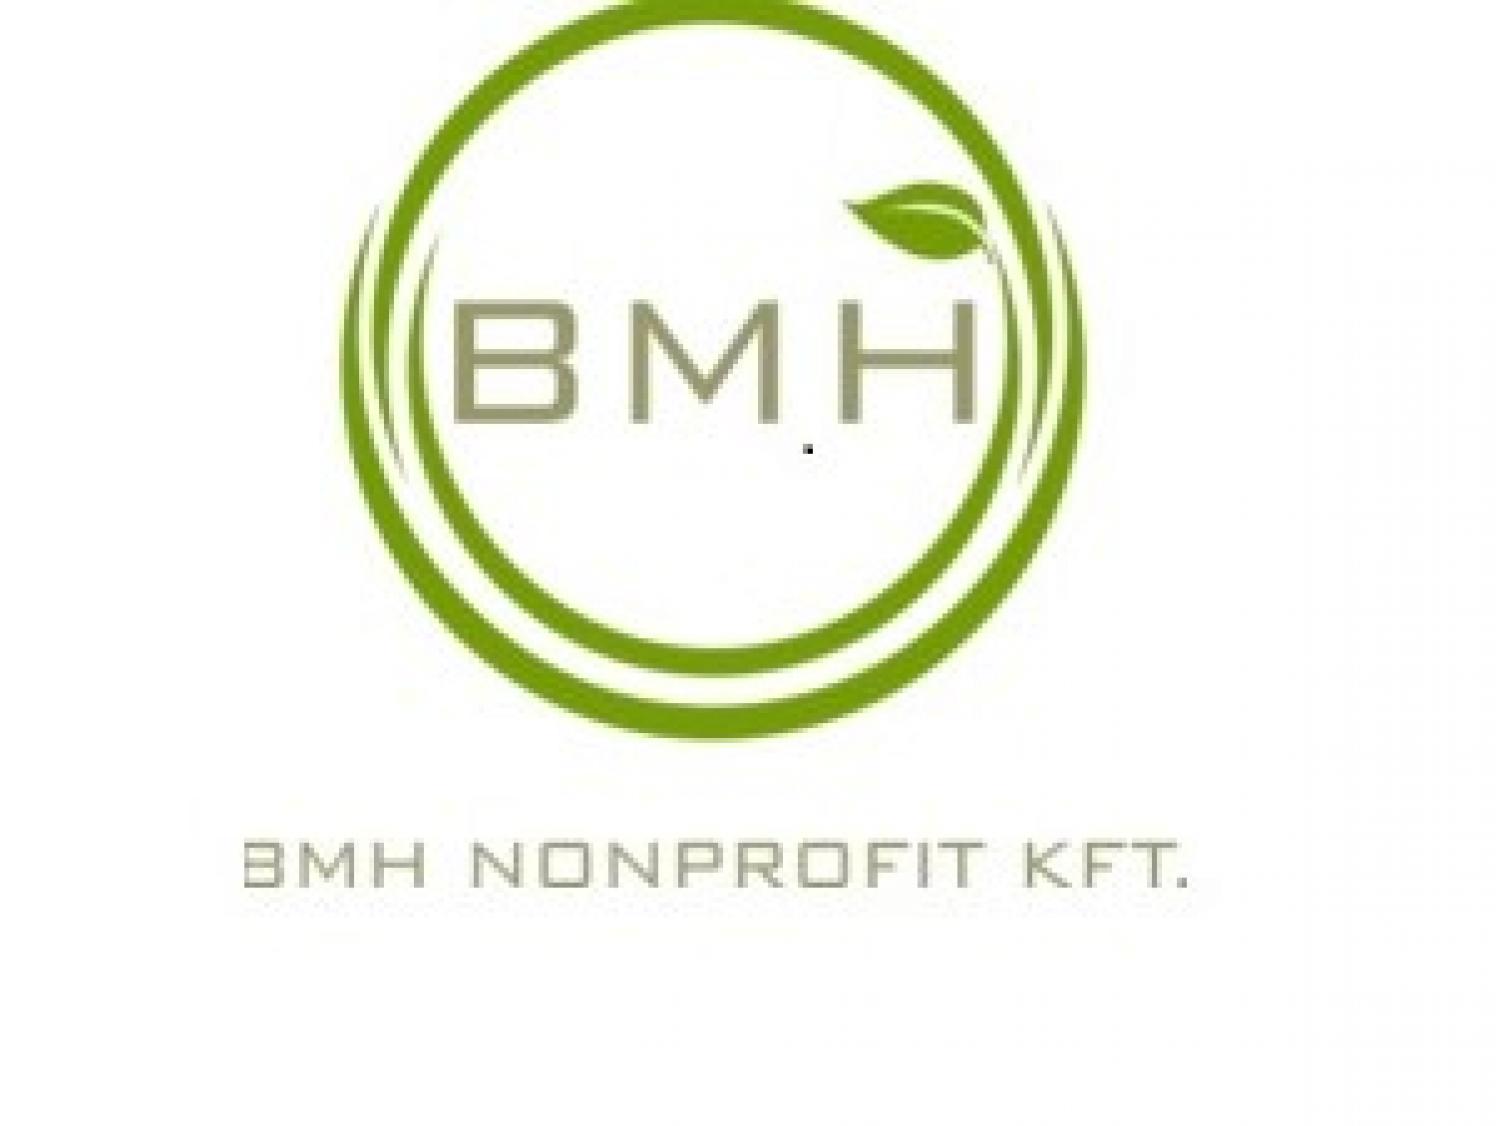 A BMH Nonprofit Kft tjkoztatsa egyes szolgltatsok korltozsrl